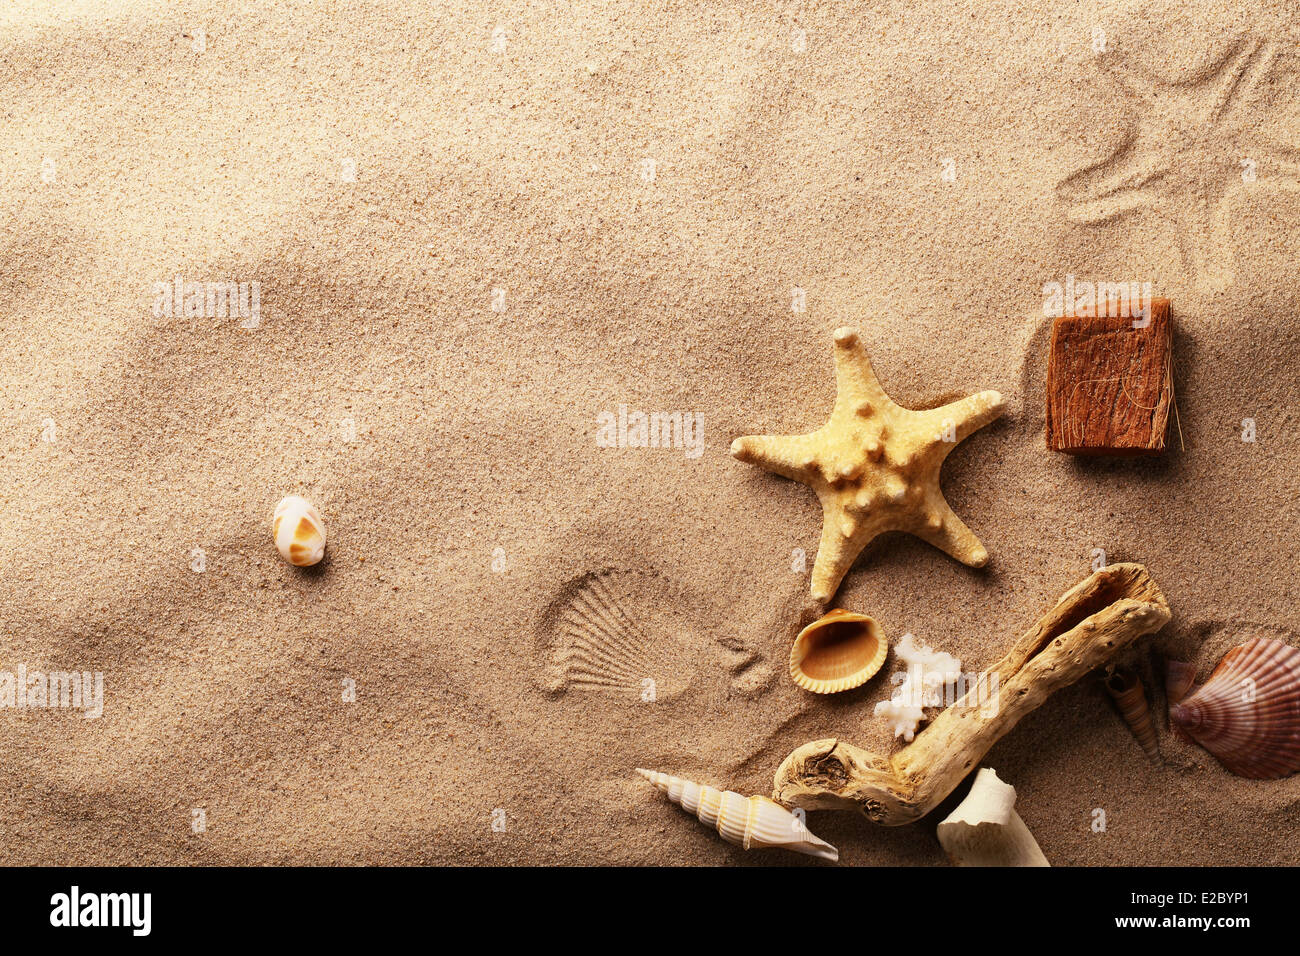 seashells on sand beach Stock Photo